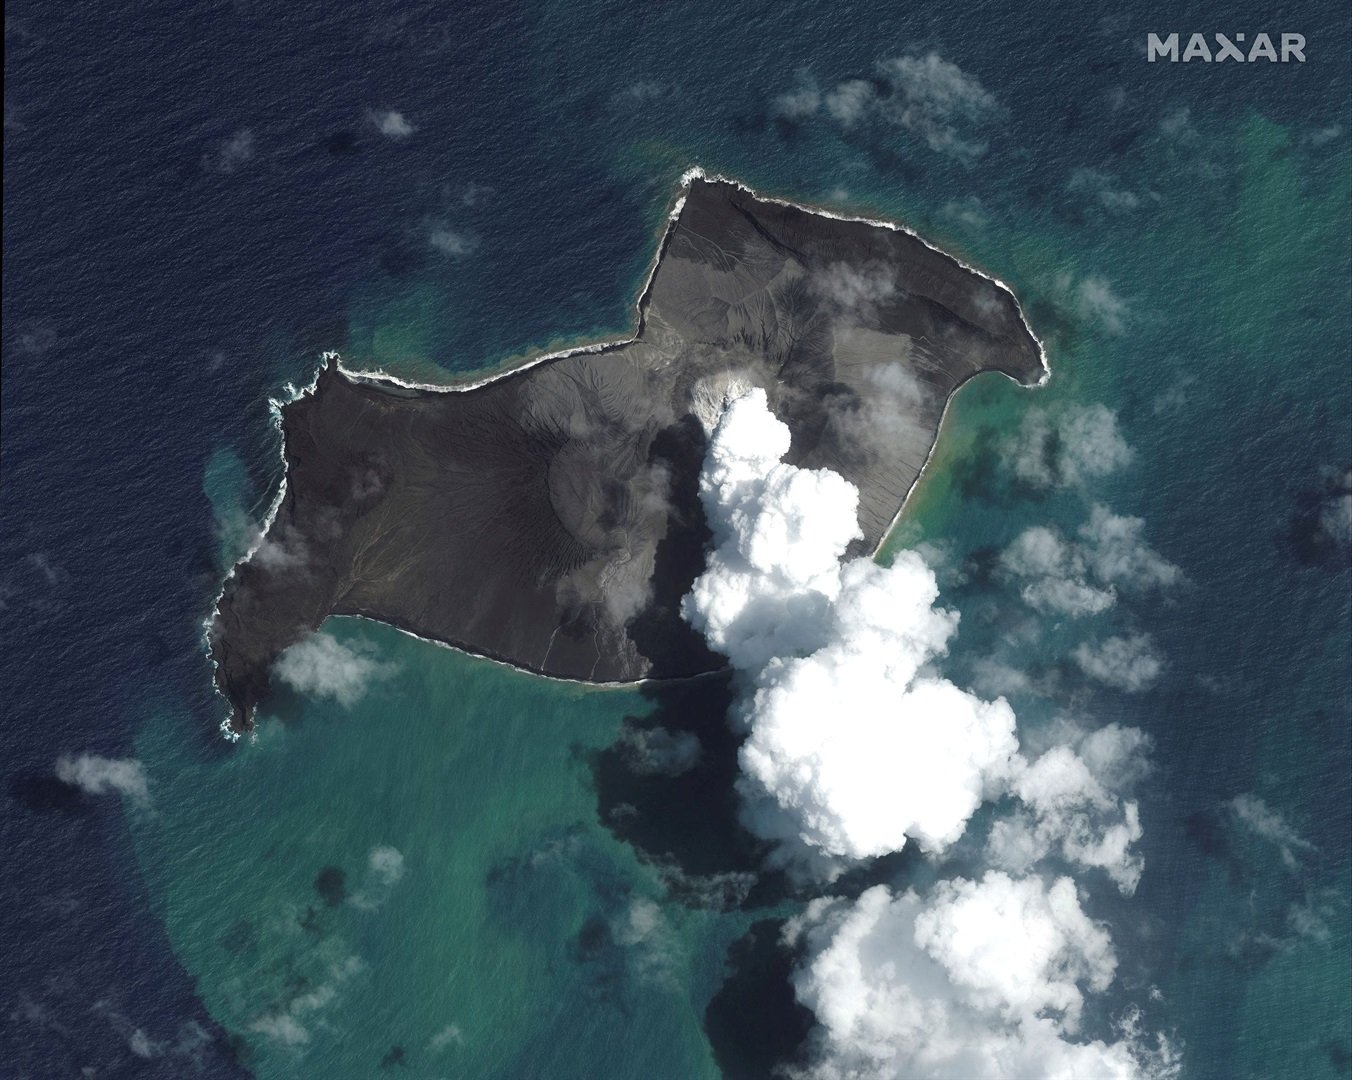 A satellite image shows the Hunga Tonga-Hunga Ha'apai volcano before its main eruption. A satellite image shows the Hunga Tonga-Hunga Ha'apai volcano before its main eruption. Satellite Image ©2022 Maxar Technologies/Handout via REUTERS